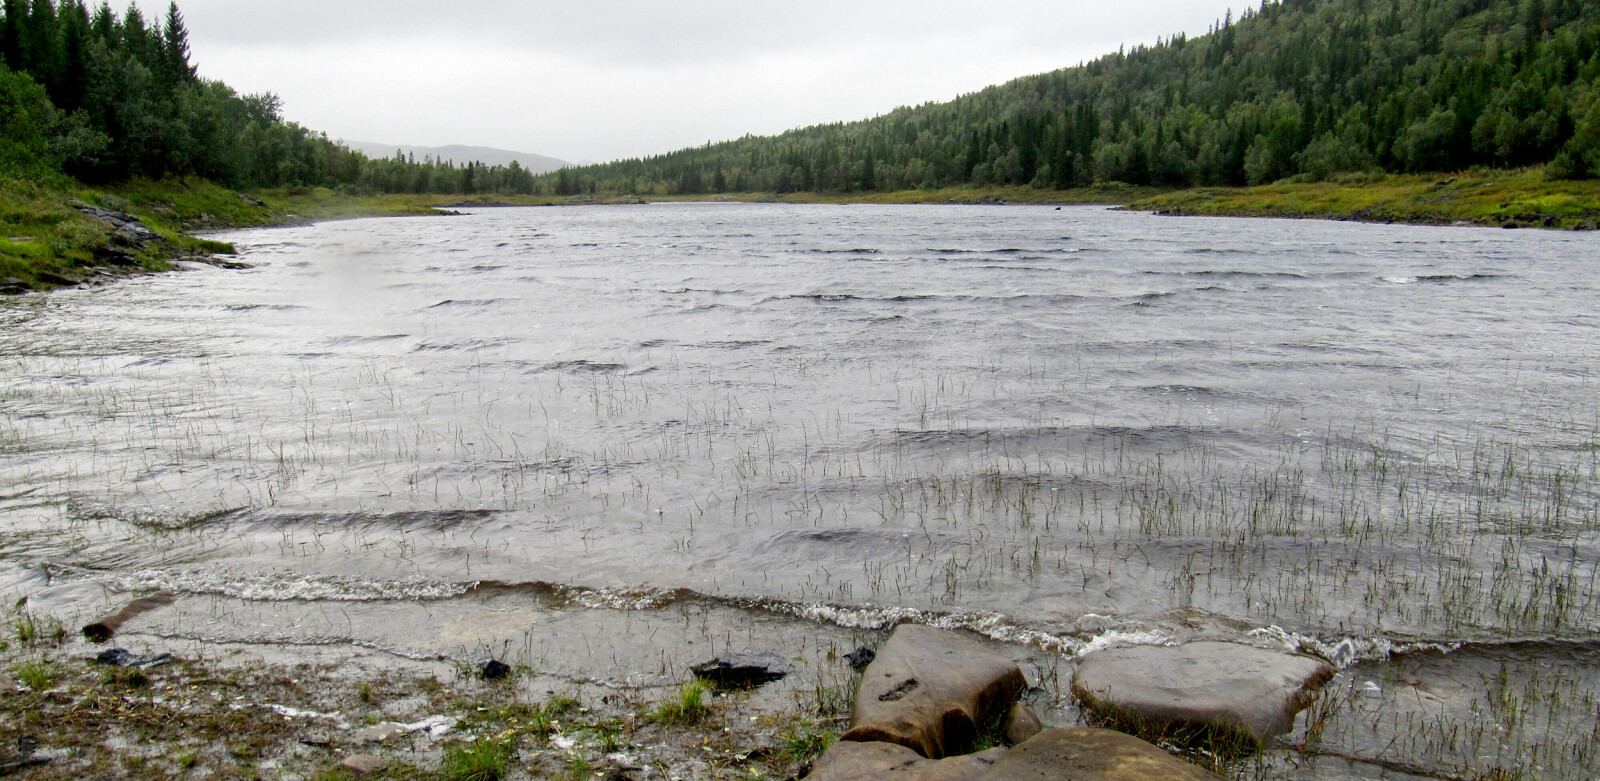 <b>ENGAVATNET:</b> Engavatnet i Velfjord i Nordland er et næringsrikt vann som huser grov ørret. I gamle dager ble det tatt ørret der på hele sju kilo. Men vannet er også en såkalt turlough, som er gælisk og betyr «tørt sted».